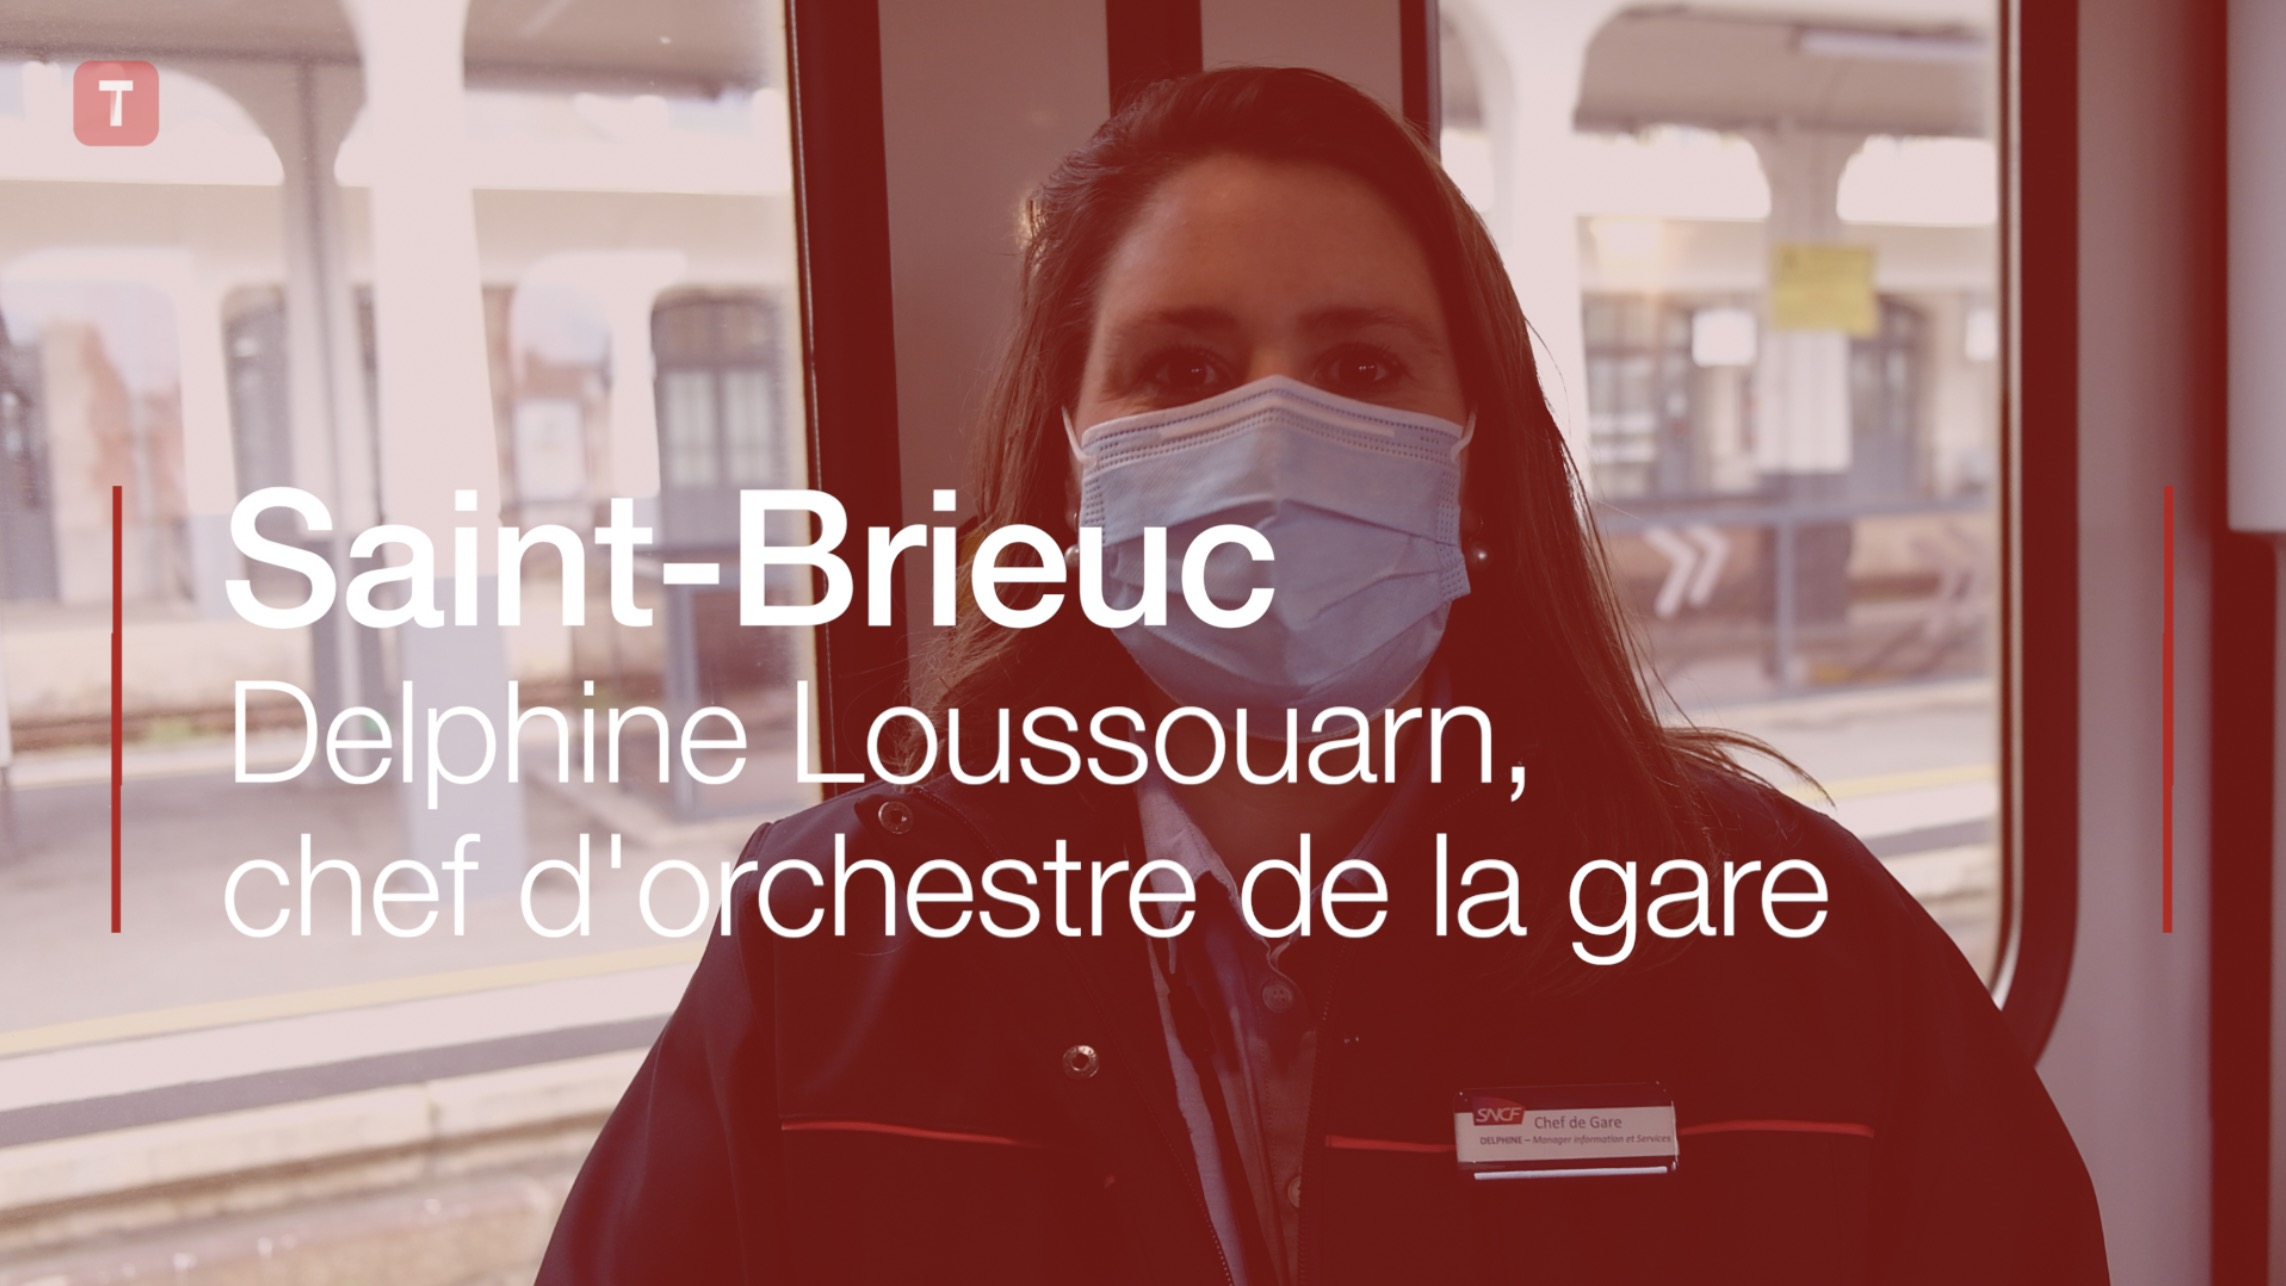 Saint-Brieuc. Delphine Loussouarn, chef d'orchestre de la gare (Le Télégramme)